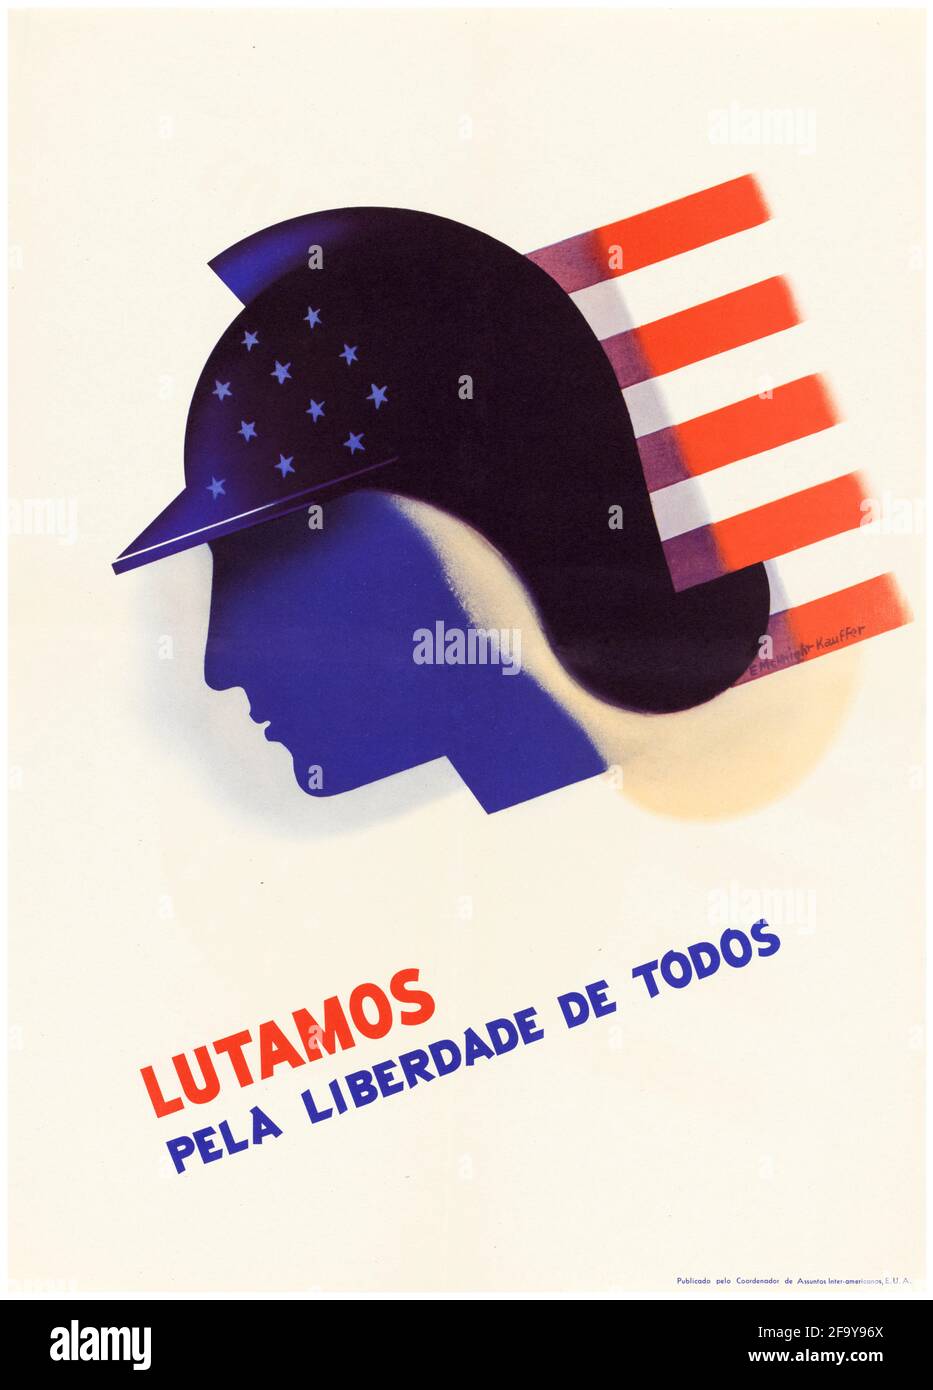 Nous luttons, pour la liberté de tous (Lutamos pela liberdade de todos), Amérique du Sud et américaine, affiche de propagande OCIAA WW2, 1942-1945 Banque D'Images